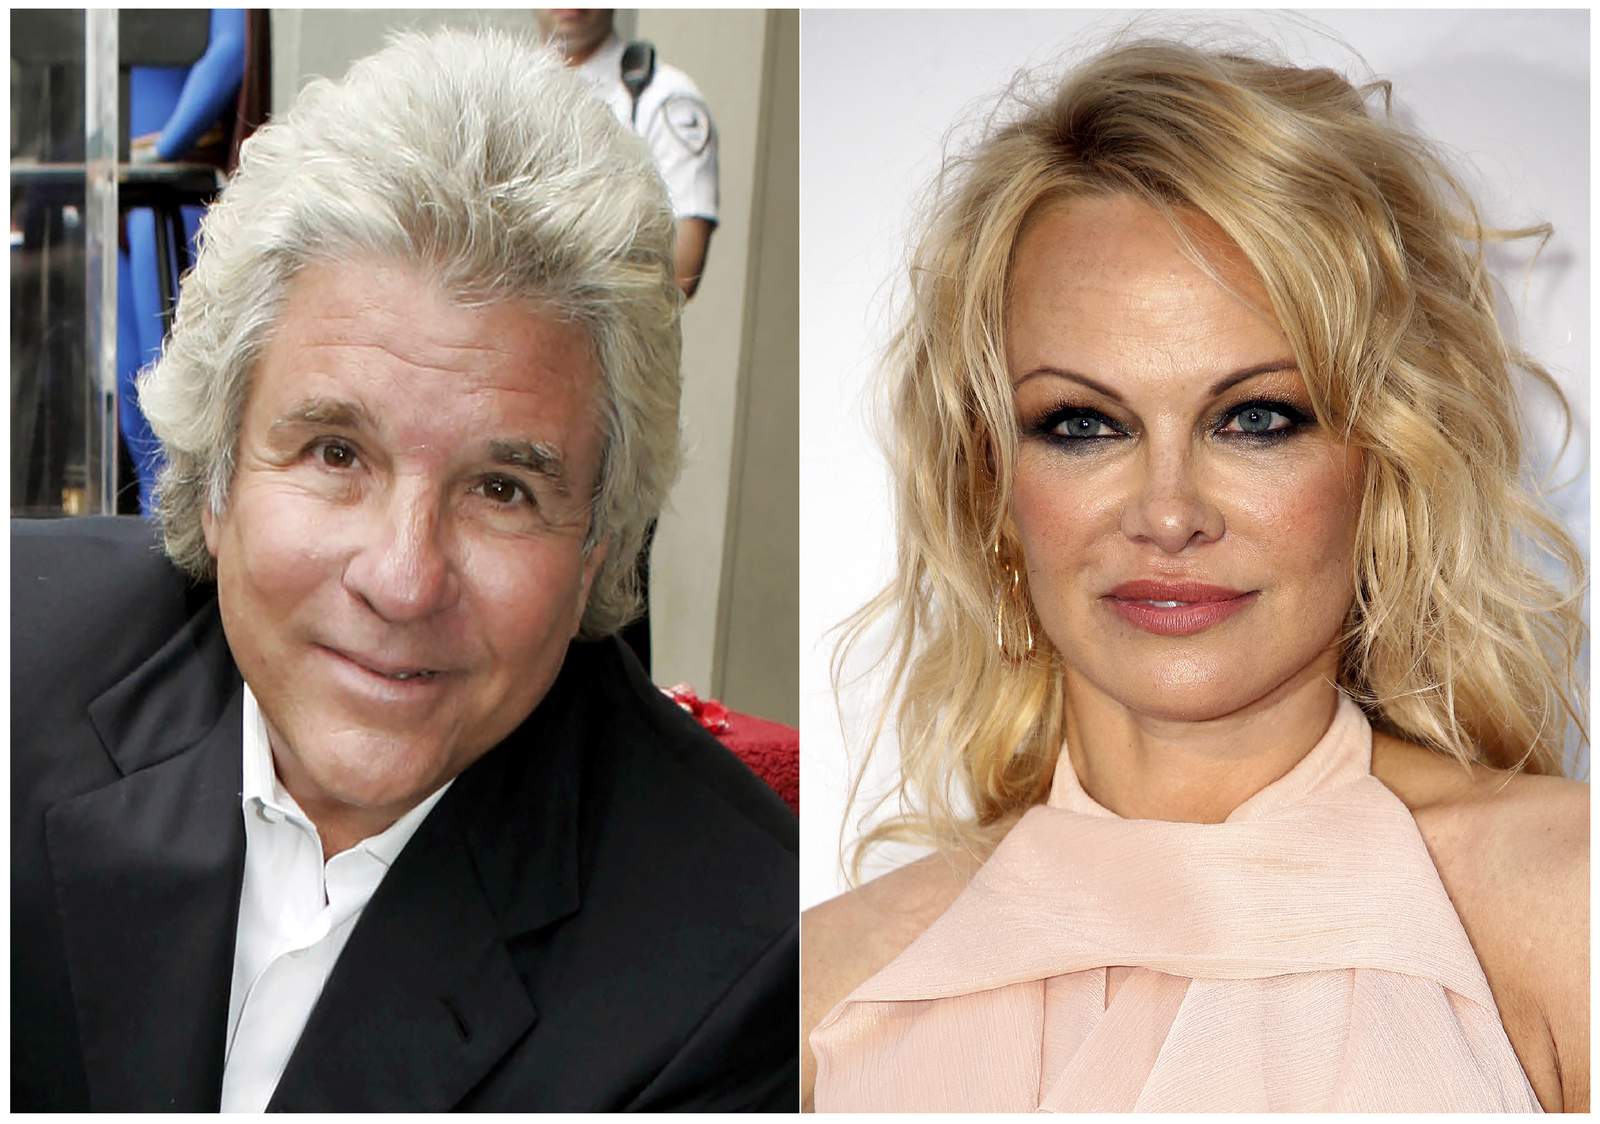 Pamela Anderson marries film producer Jon Peters